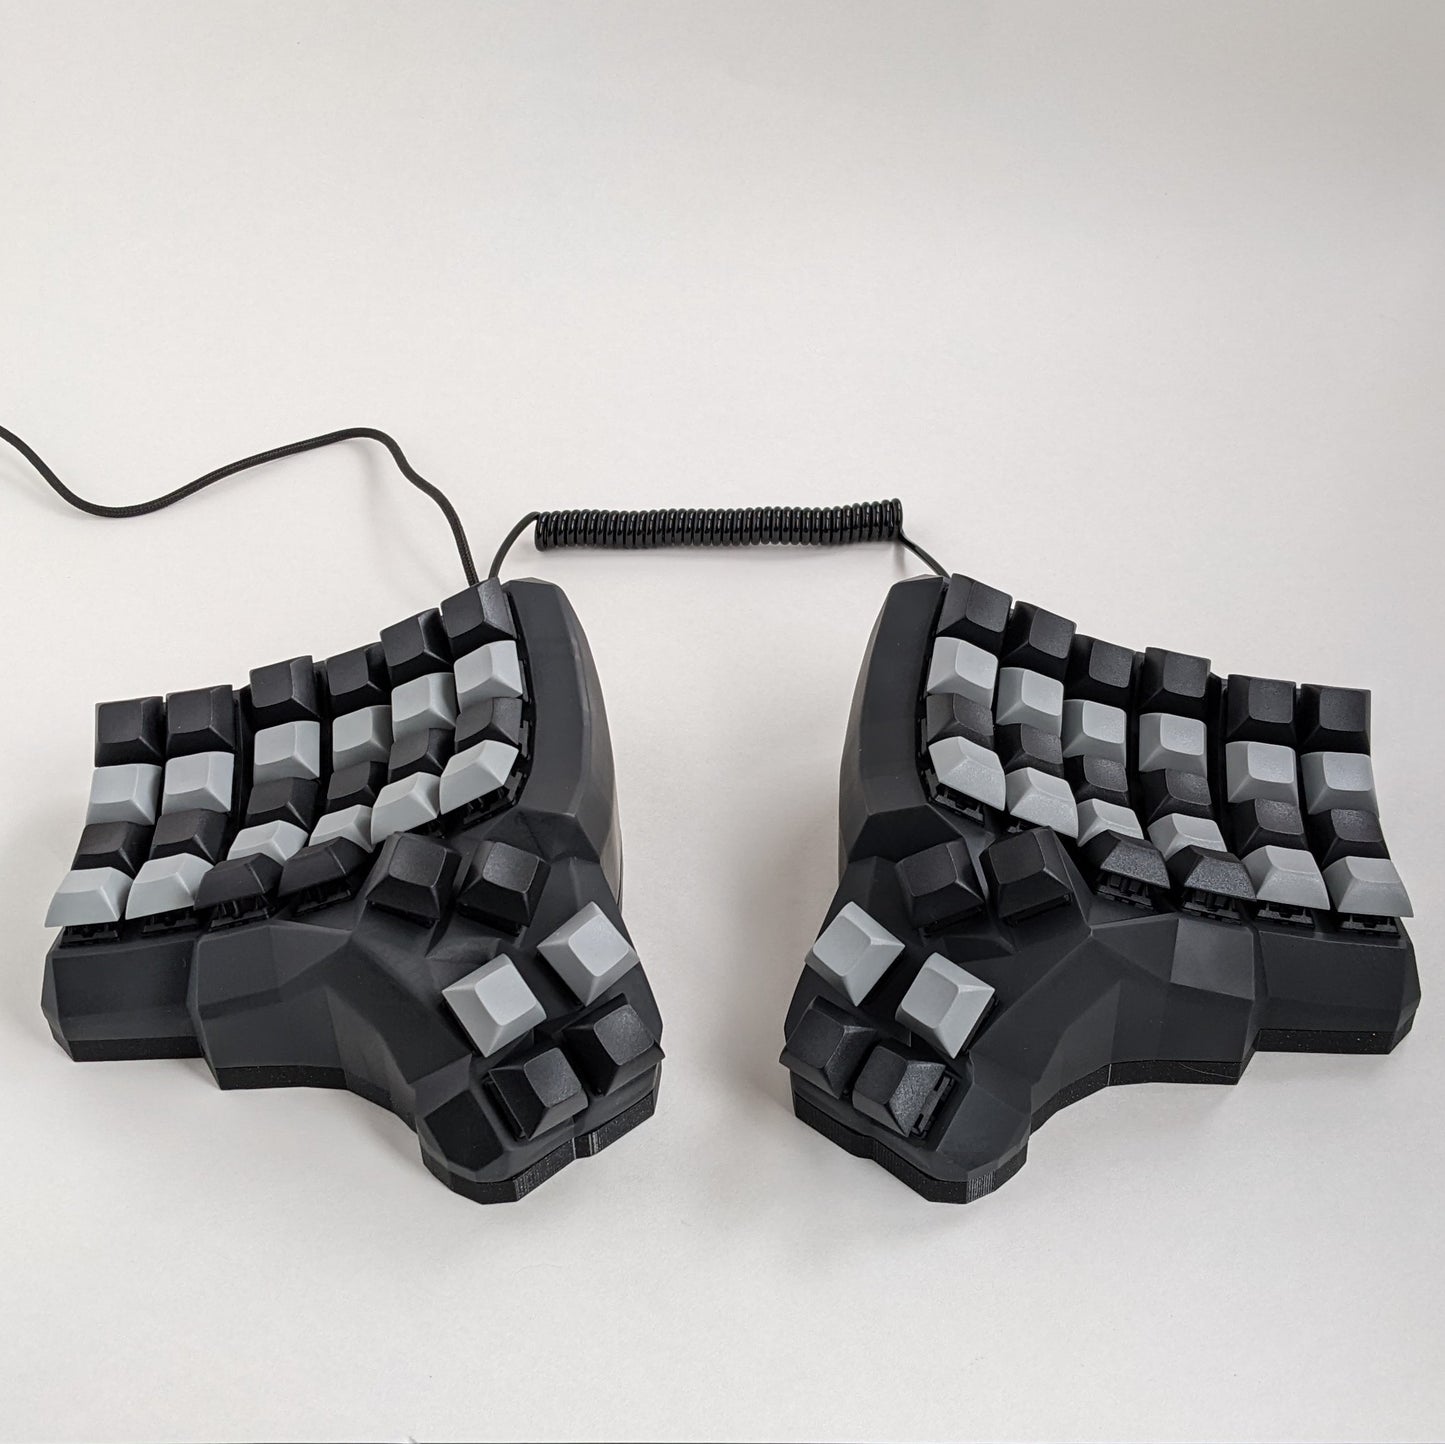 Dactyl Manuform Keyboard